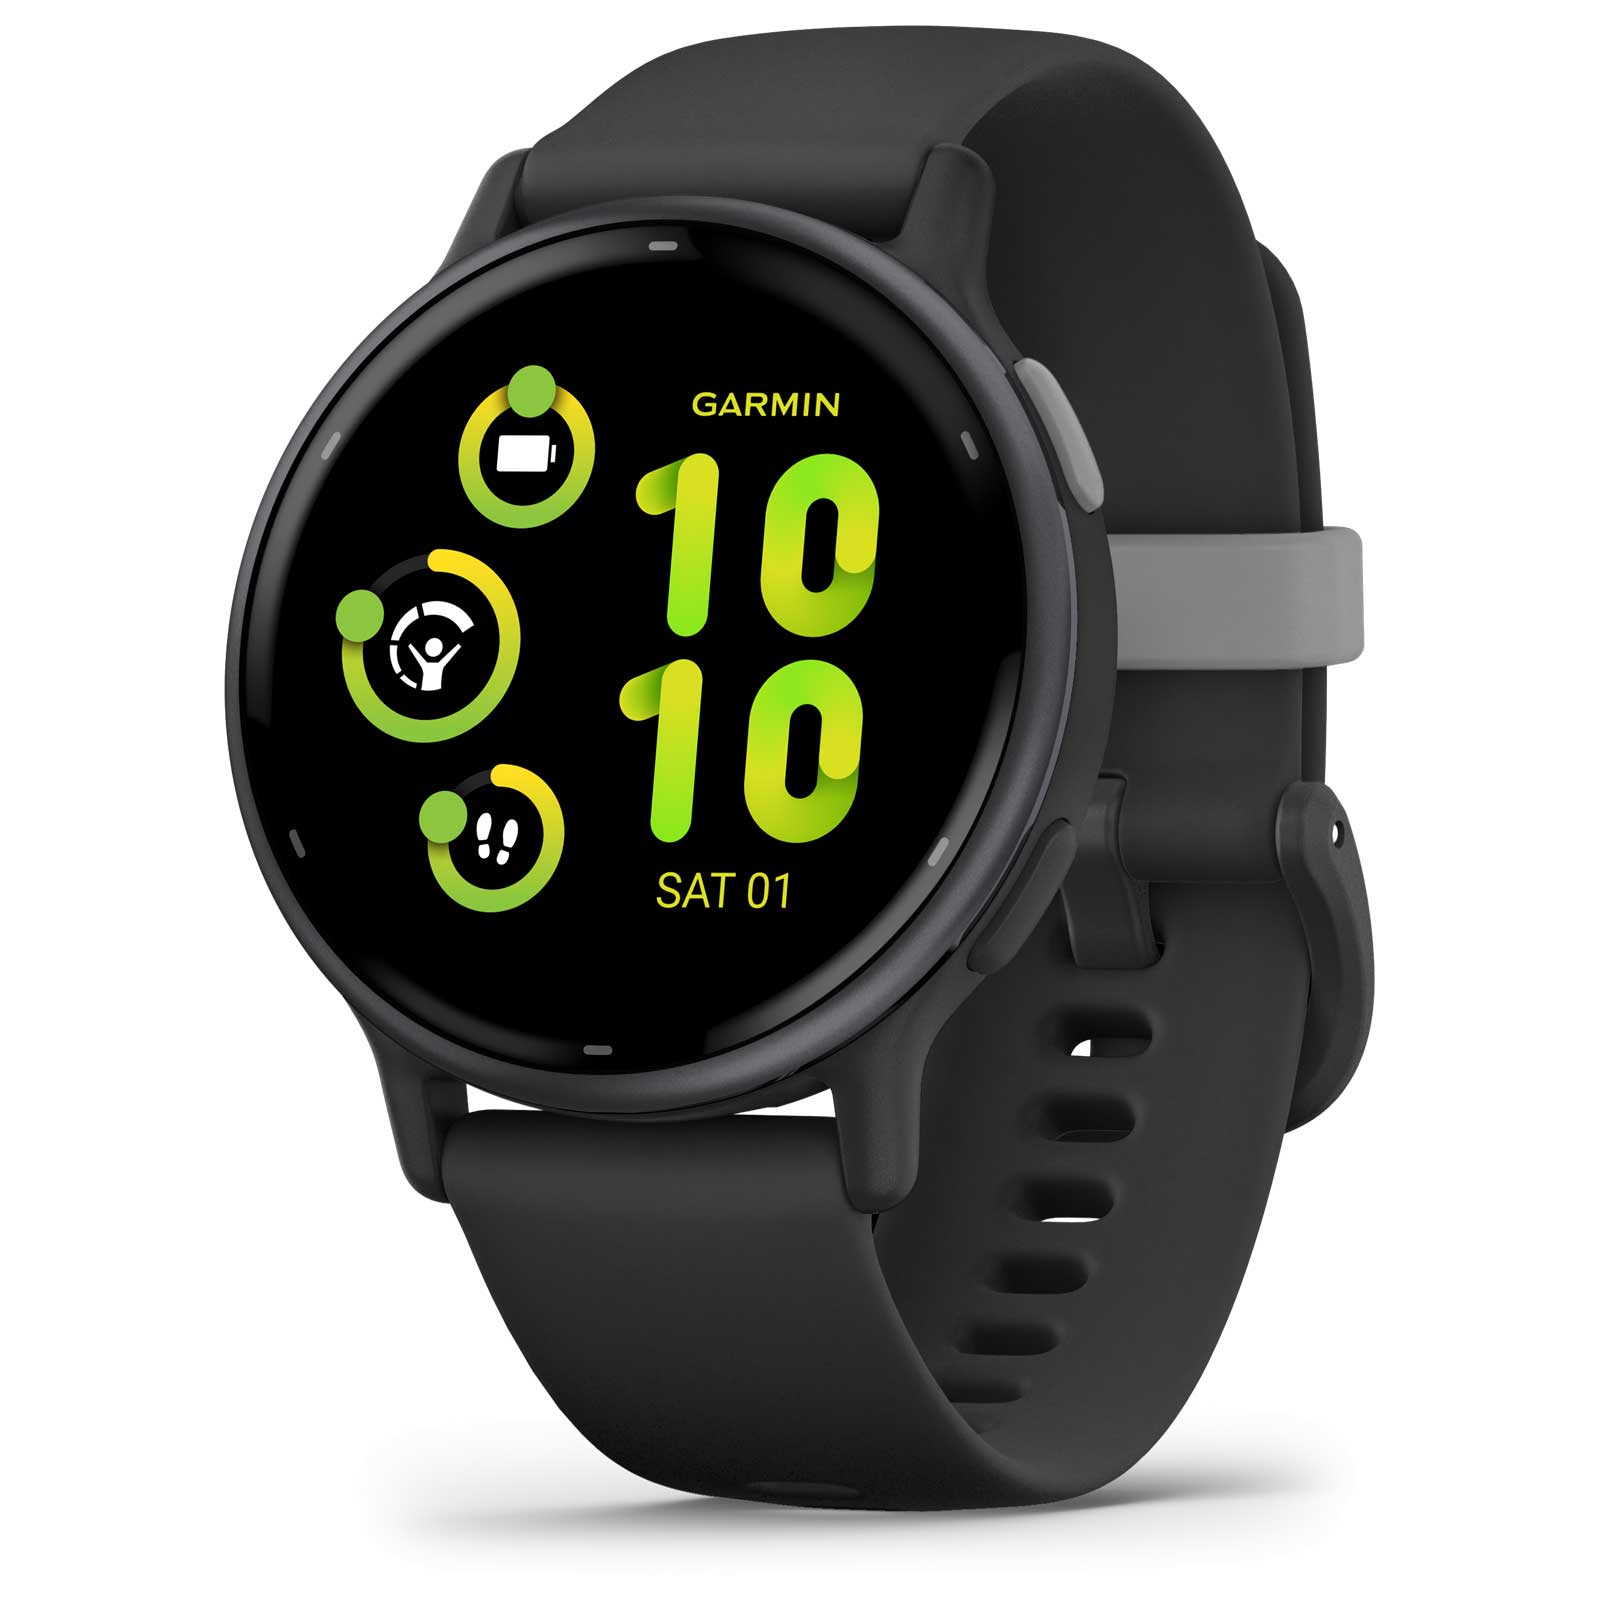 Produktbild von Garmin vivoactive 5 GPS Smartwatch - Schwarz/Schiefergrau